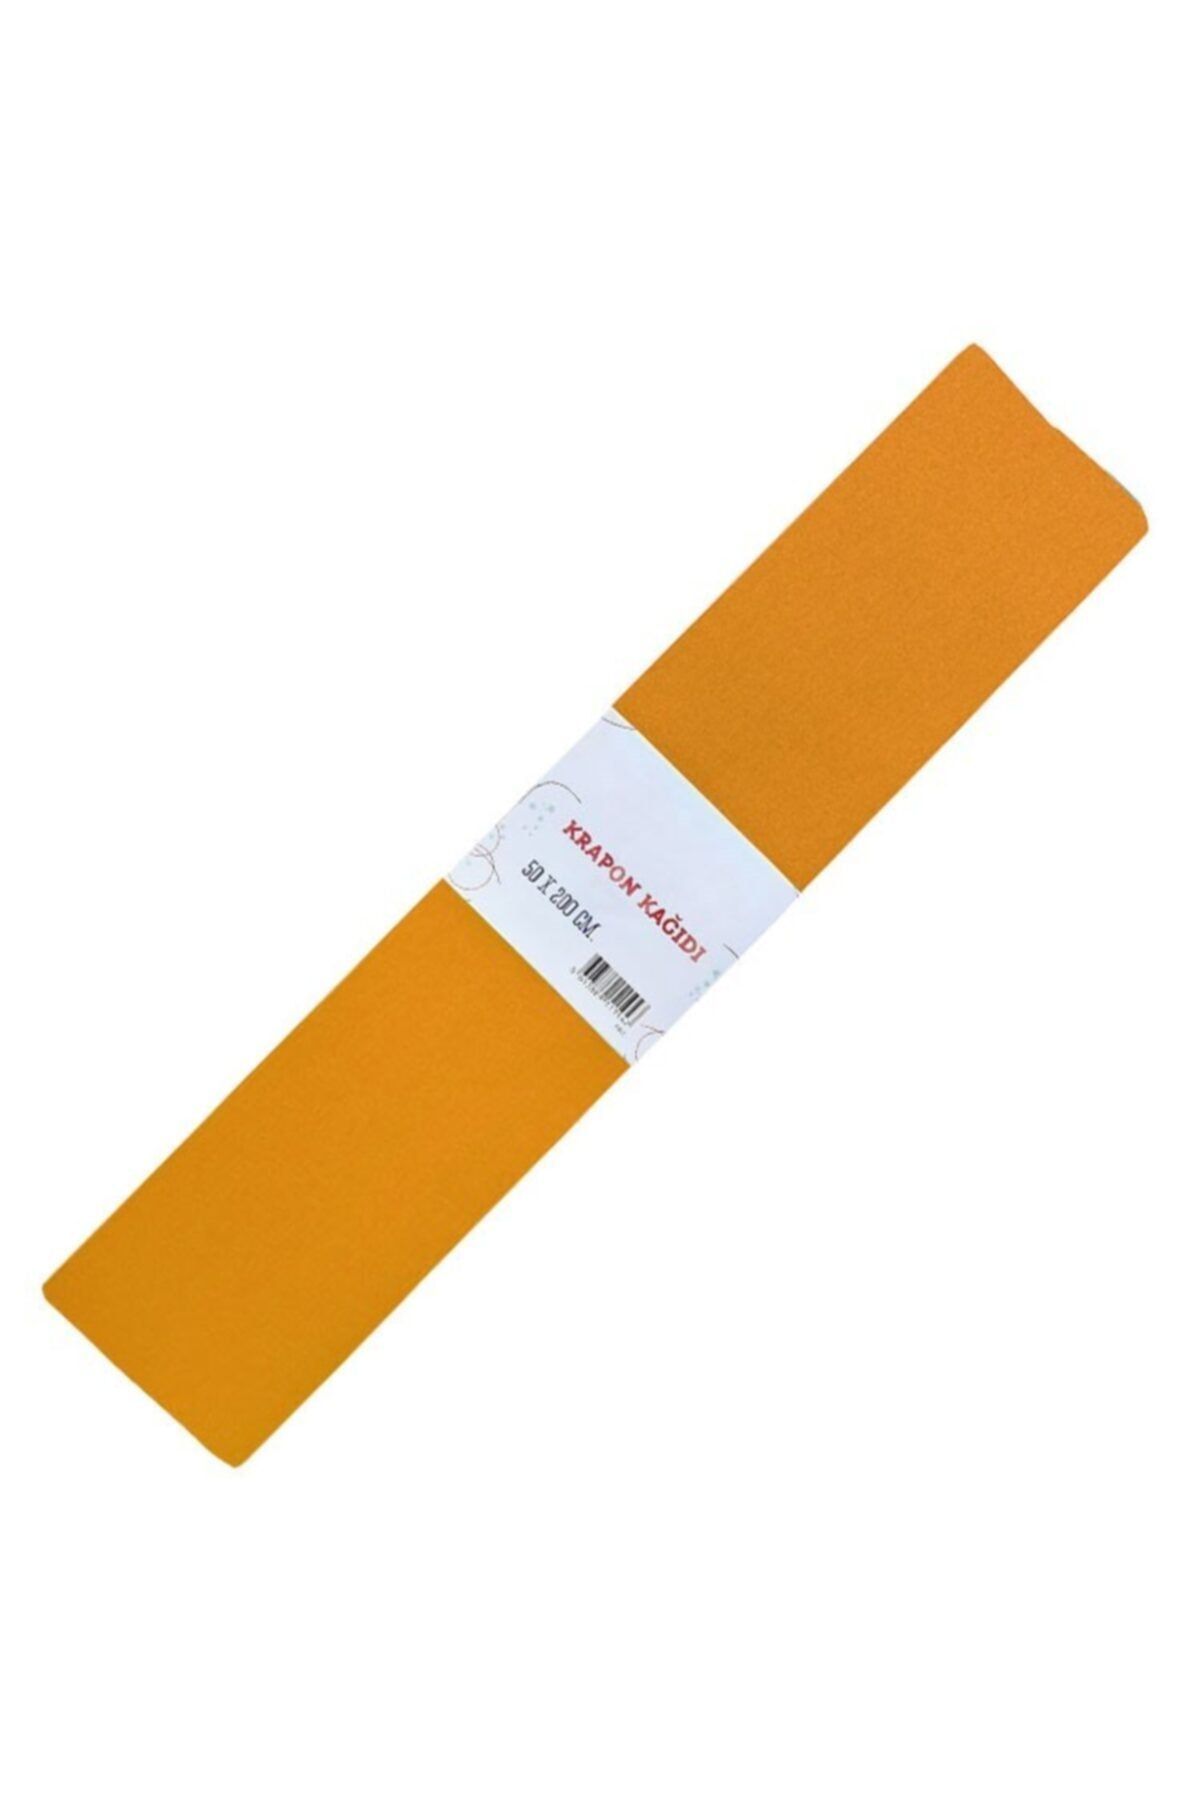 Gıpta Renkli Krapon Kağıdı 50cm X 2mt Turuncu (10 Lu Paket) 9128